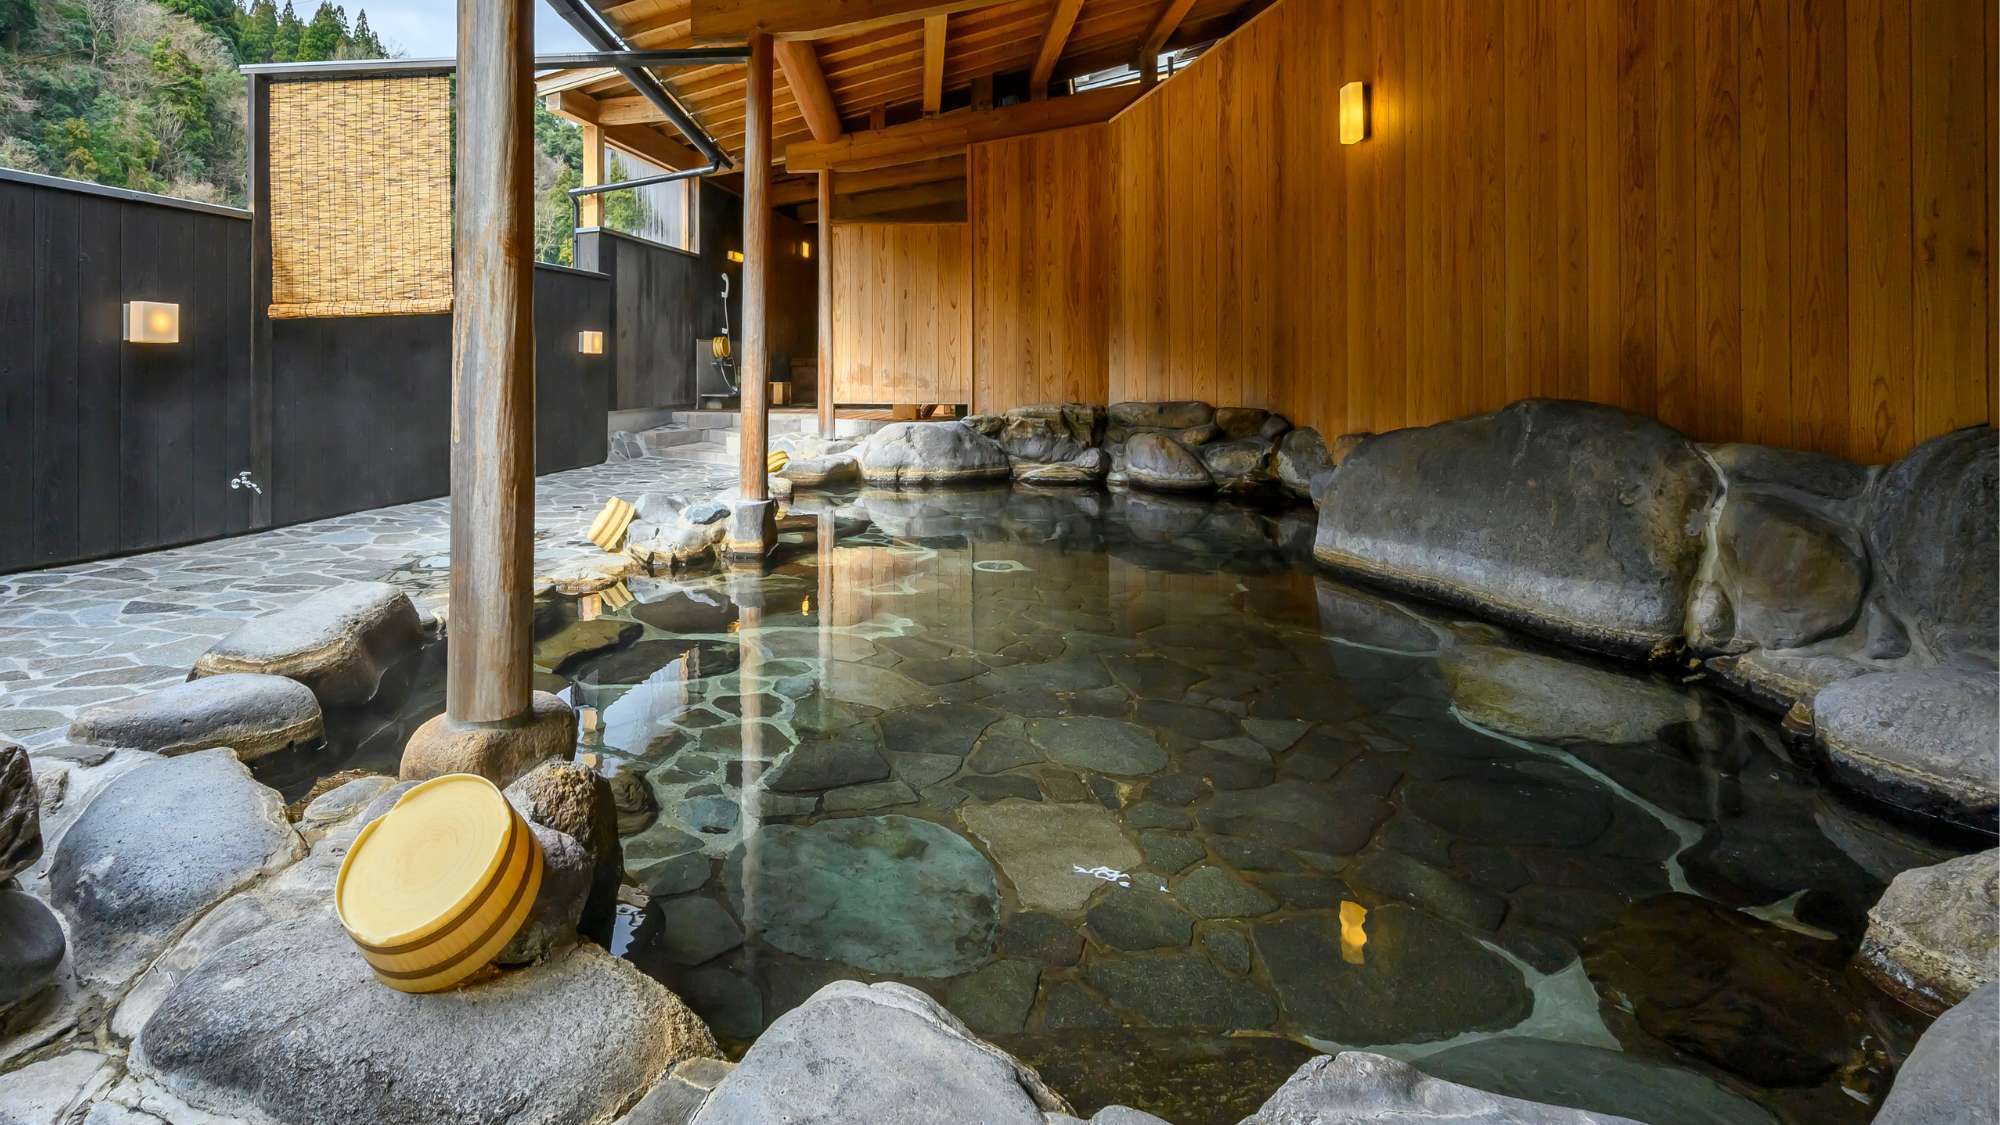 爽やかな空気、三徳川のせせらぎの音とともに上質な温泉を楽しむ「せせらぎの湯」